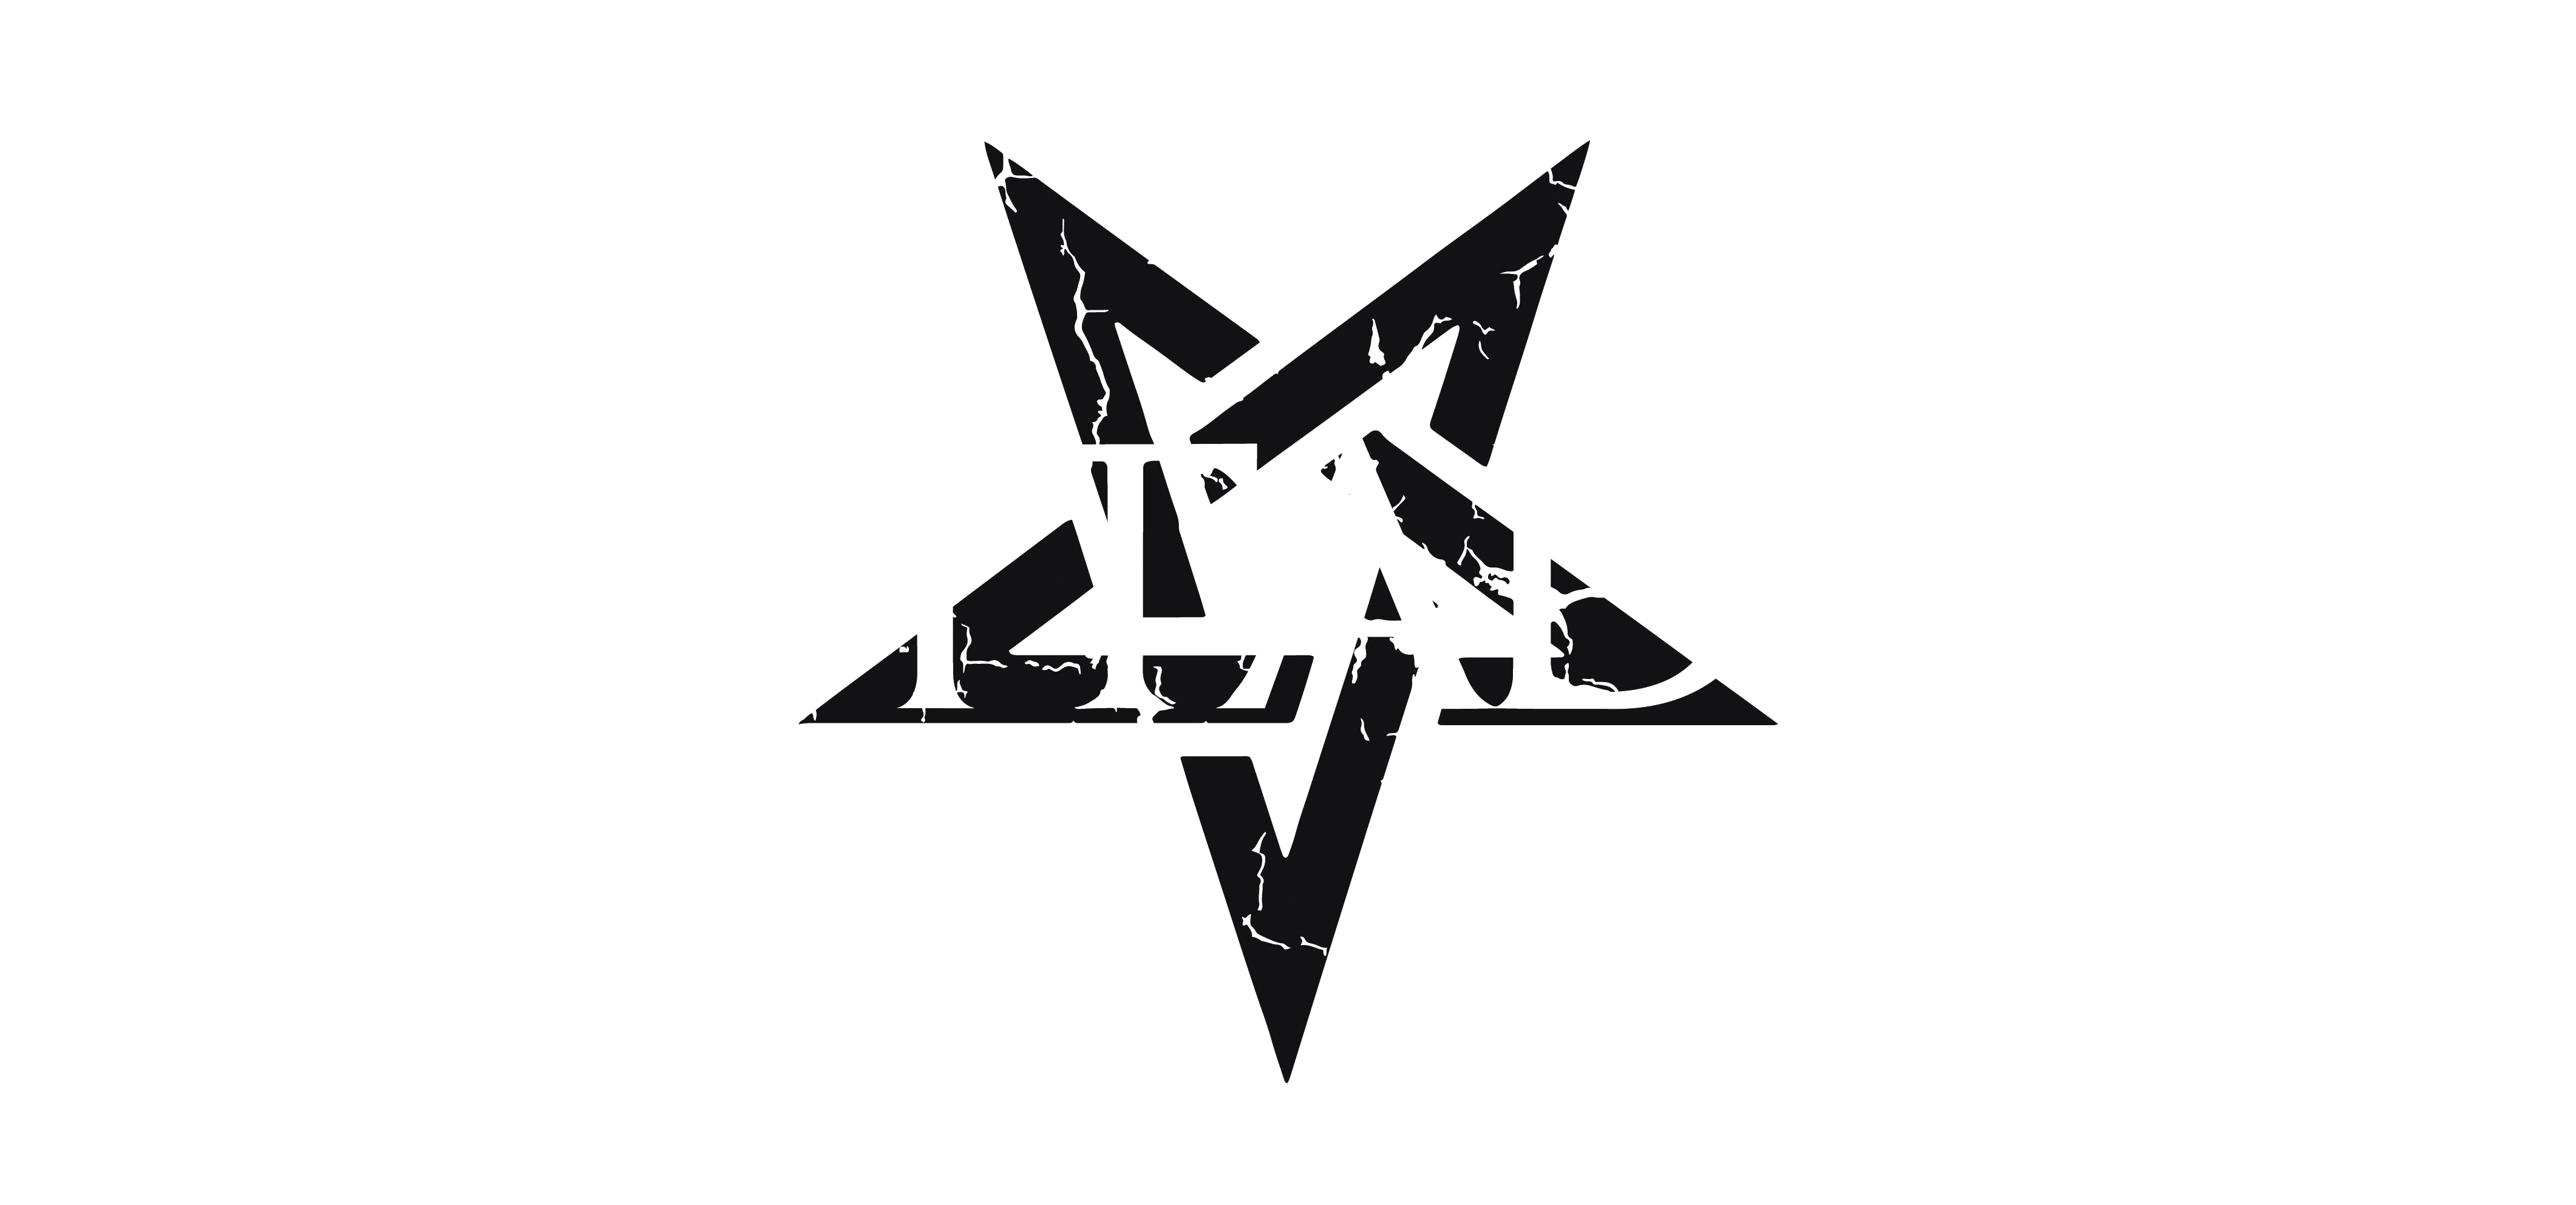 Eshtadur Band Logo